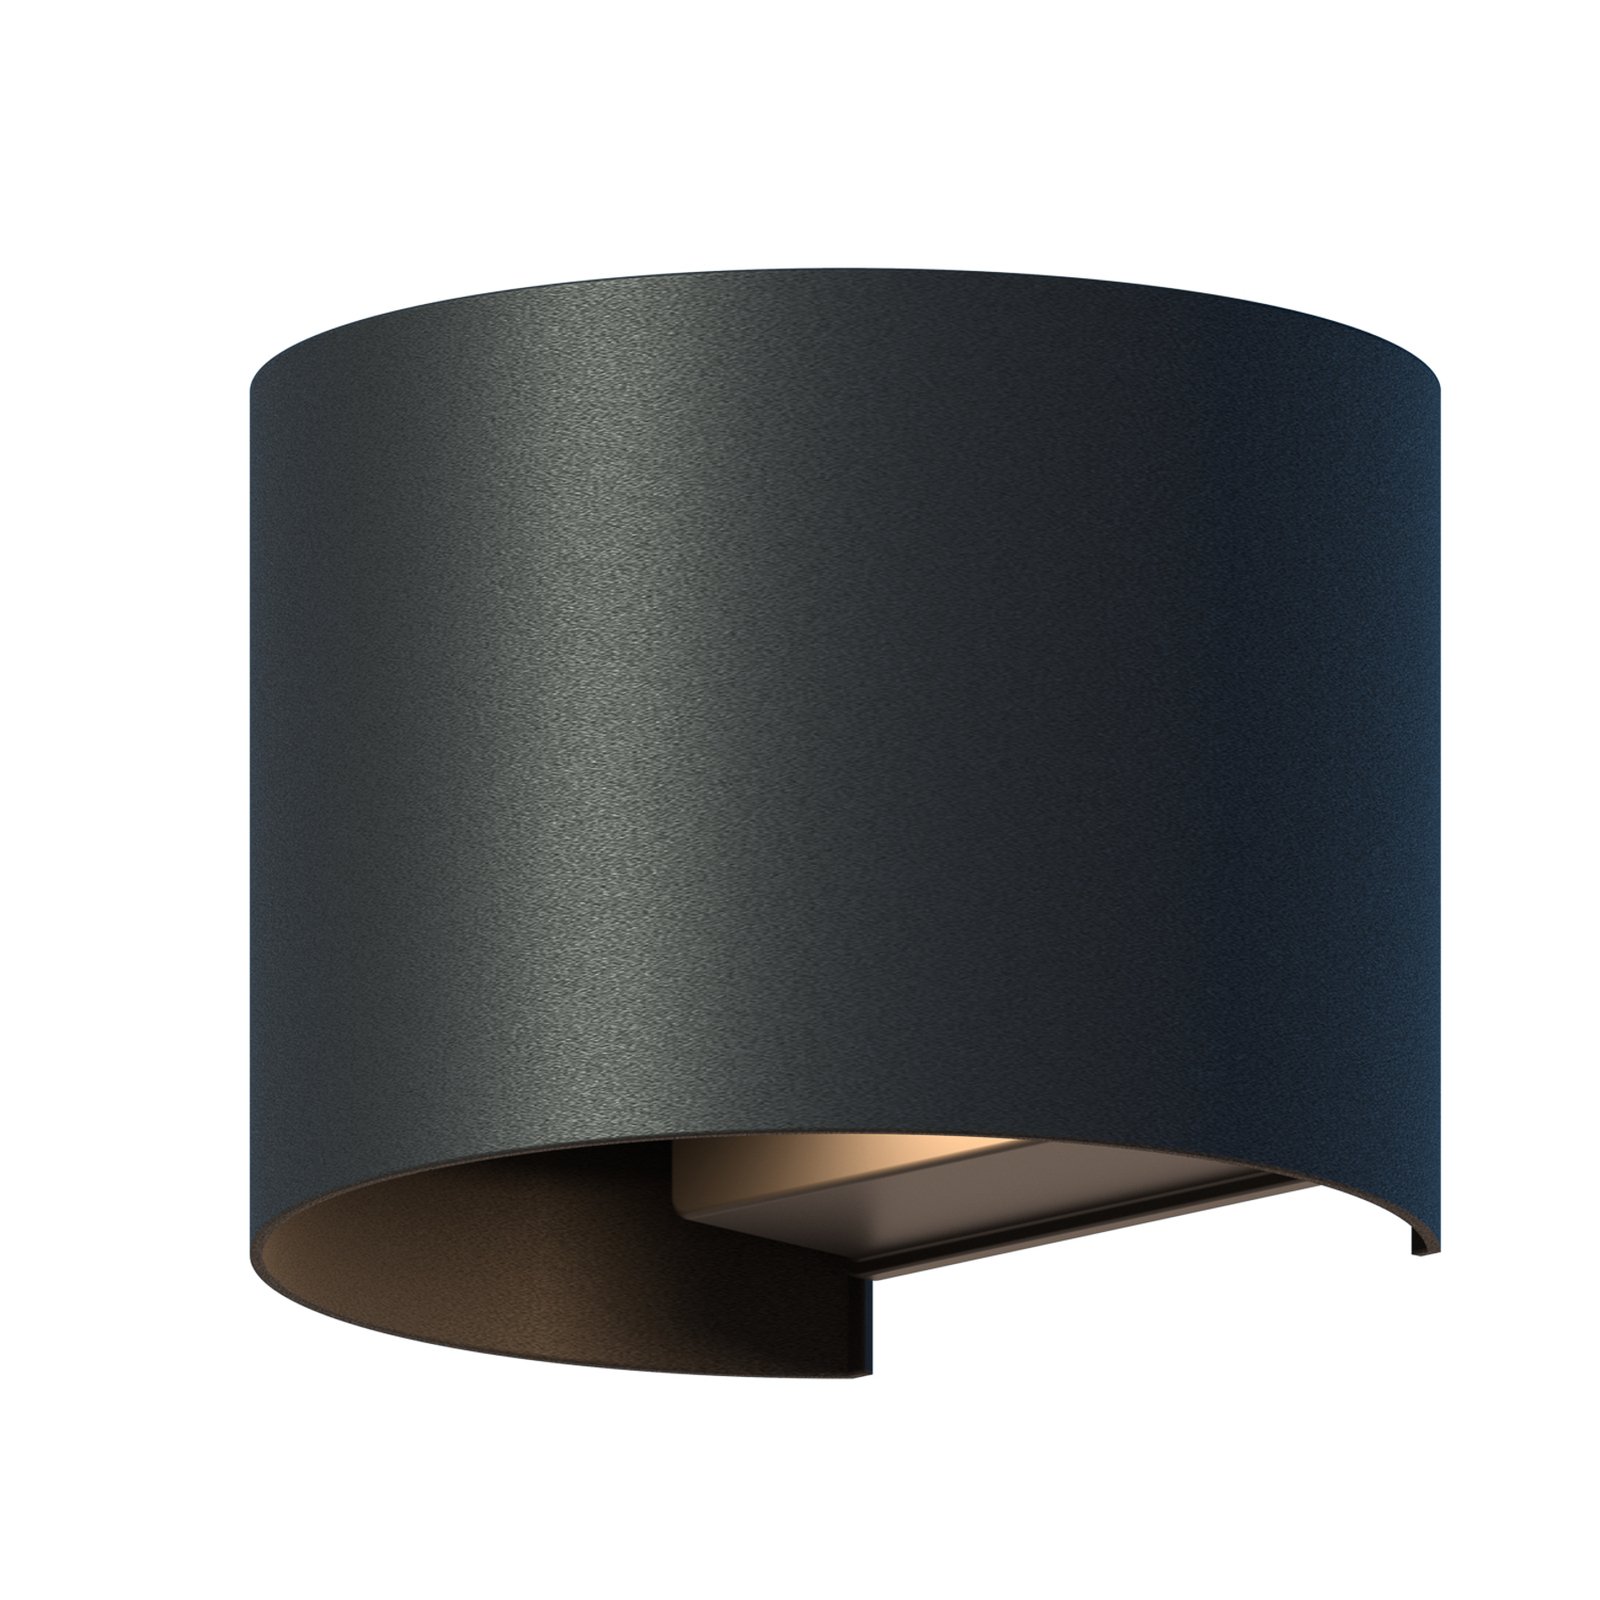 Vonkajšie nástenné svietidlo Calex LED Oval, hore/dole, výška 10 cm, čierne